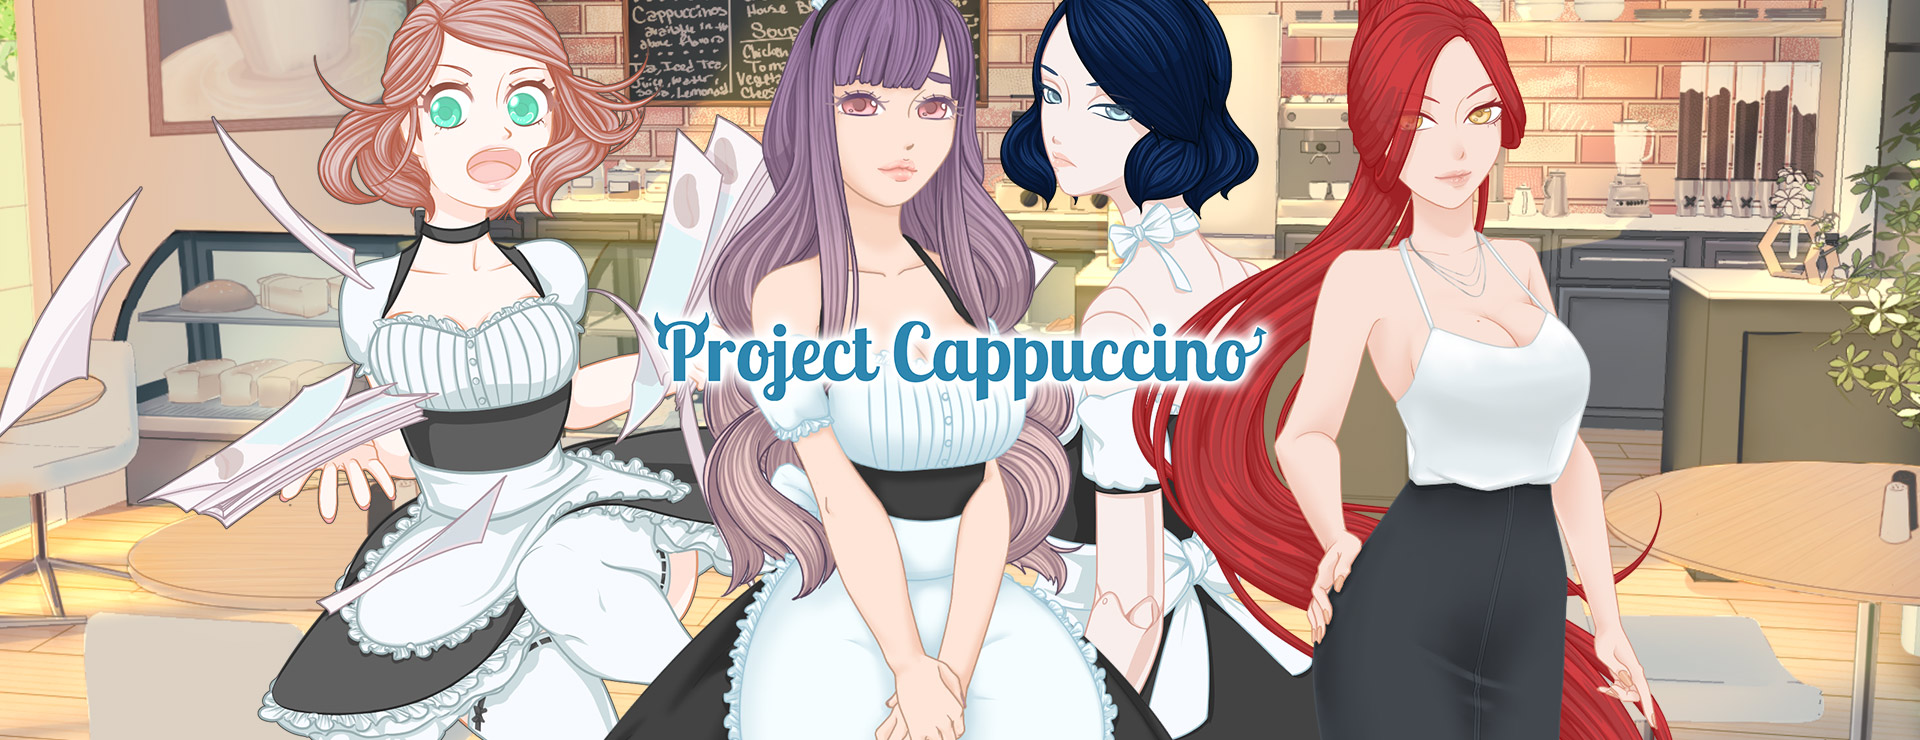 Project Cappuccino - Powieść wizualna Gra